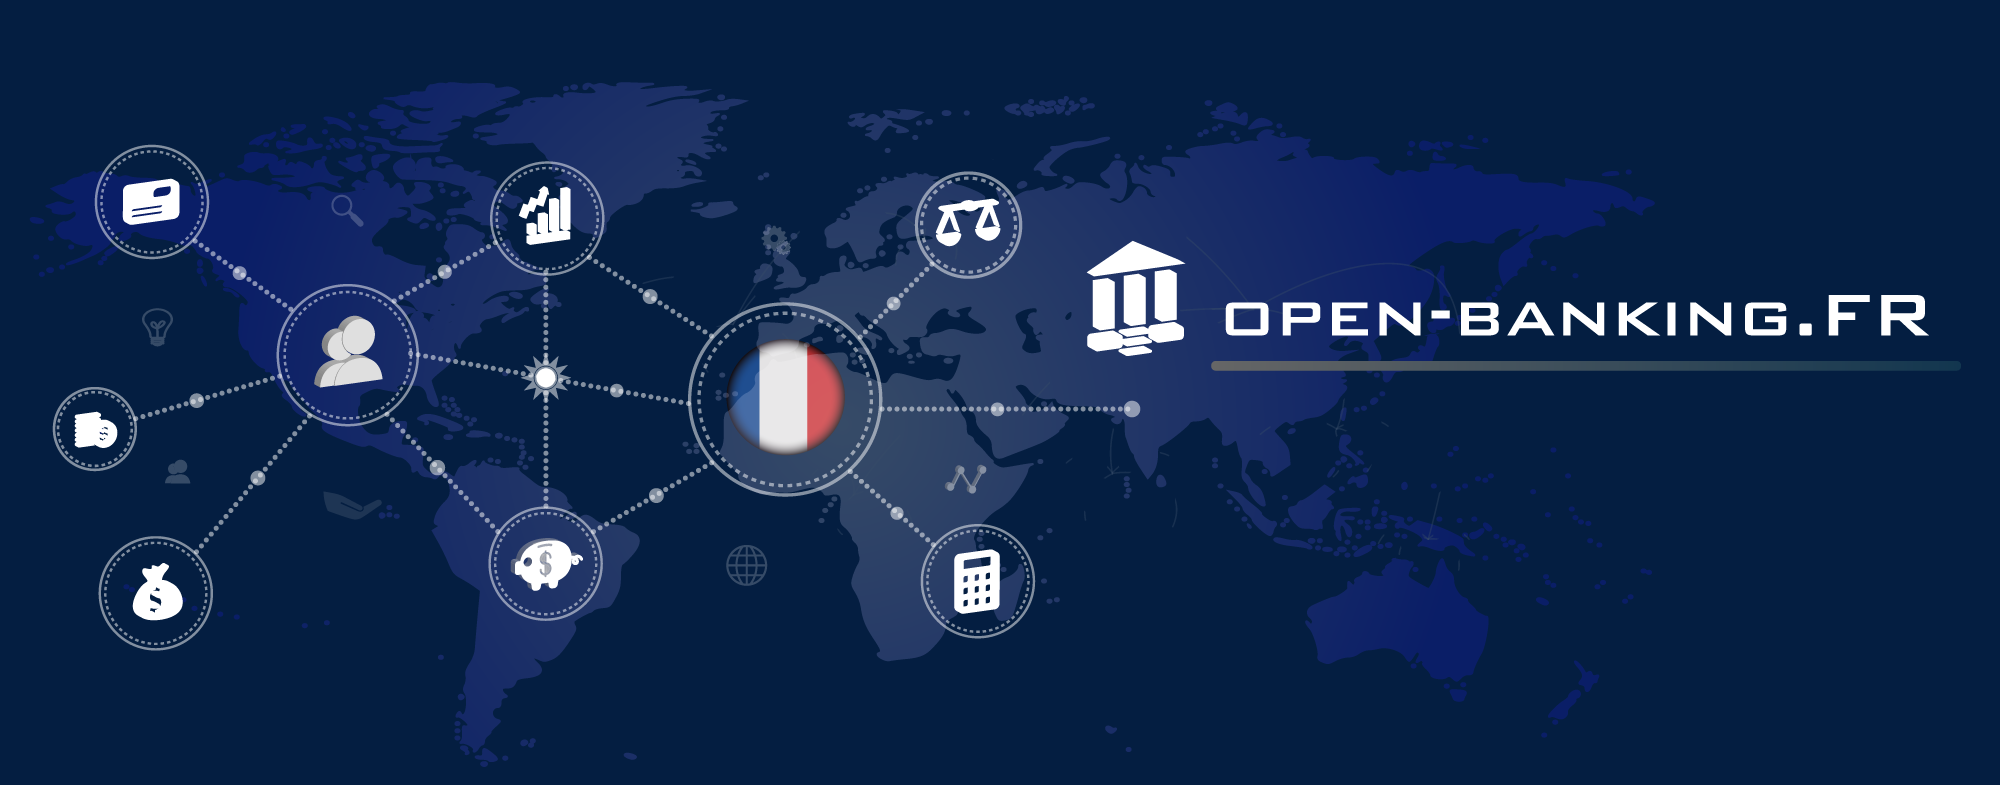 Bannière open-banking.fr